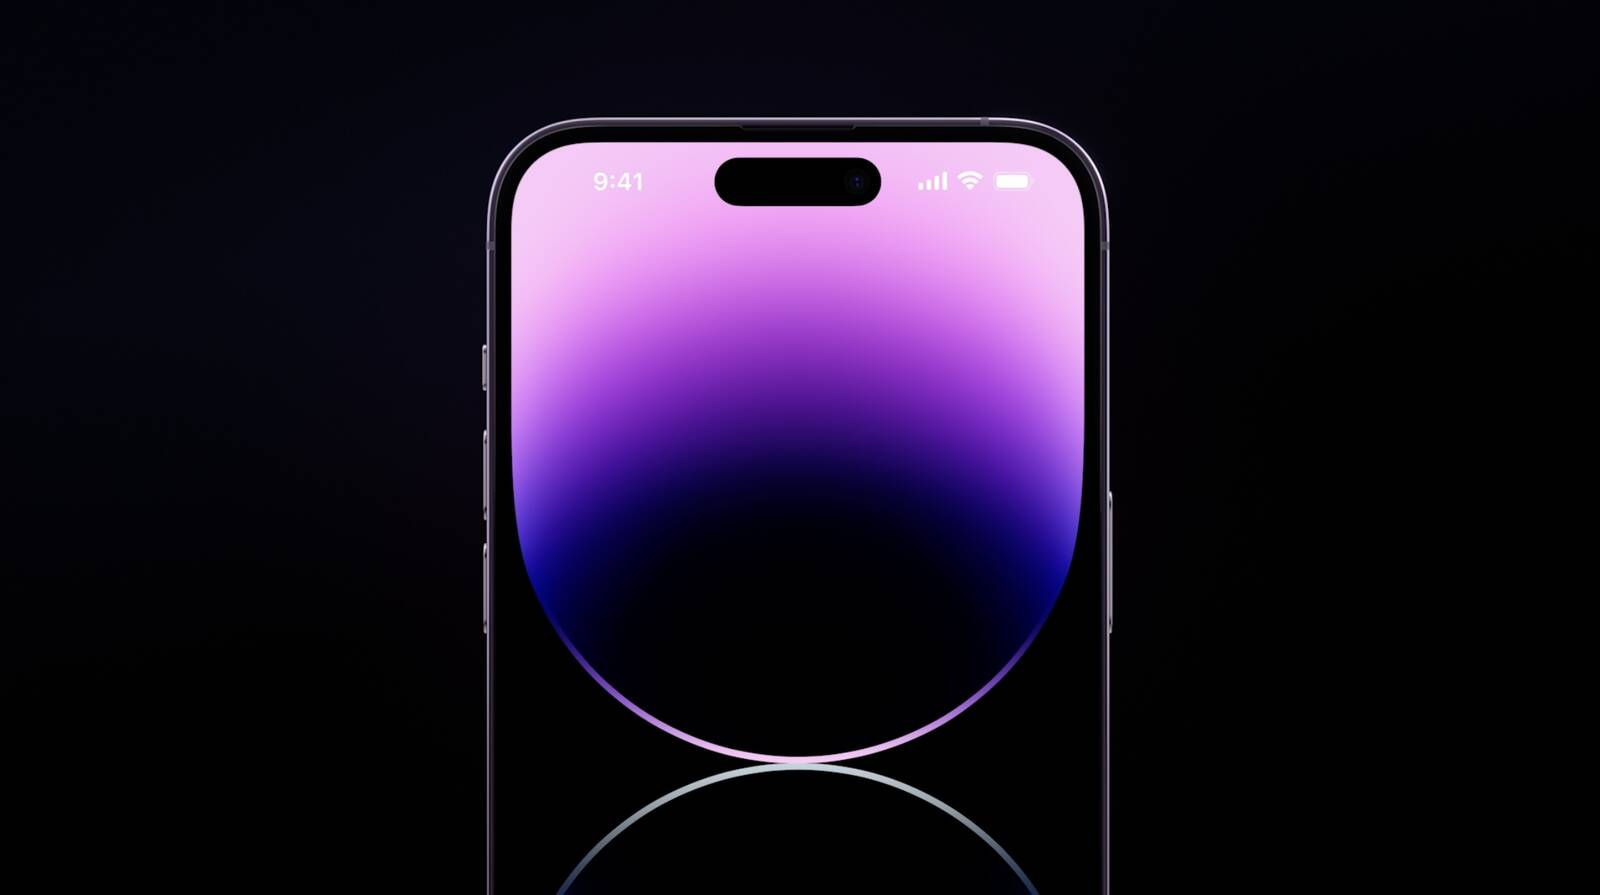 iPhone 14 Promax: Chiếc điện thoại tuyệt đẹp này sẽ thấm vào lòng bạn ngay từ cái nhìn đầu tiên. Cùng trải nghiệm cảm giác thăng hoa với màn hình lớn và mượt mà, camera chuyên nghiệp, cùng những tính năng vượt trội khác đến từ chiếc iPhone 14 Promax.